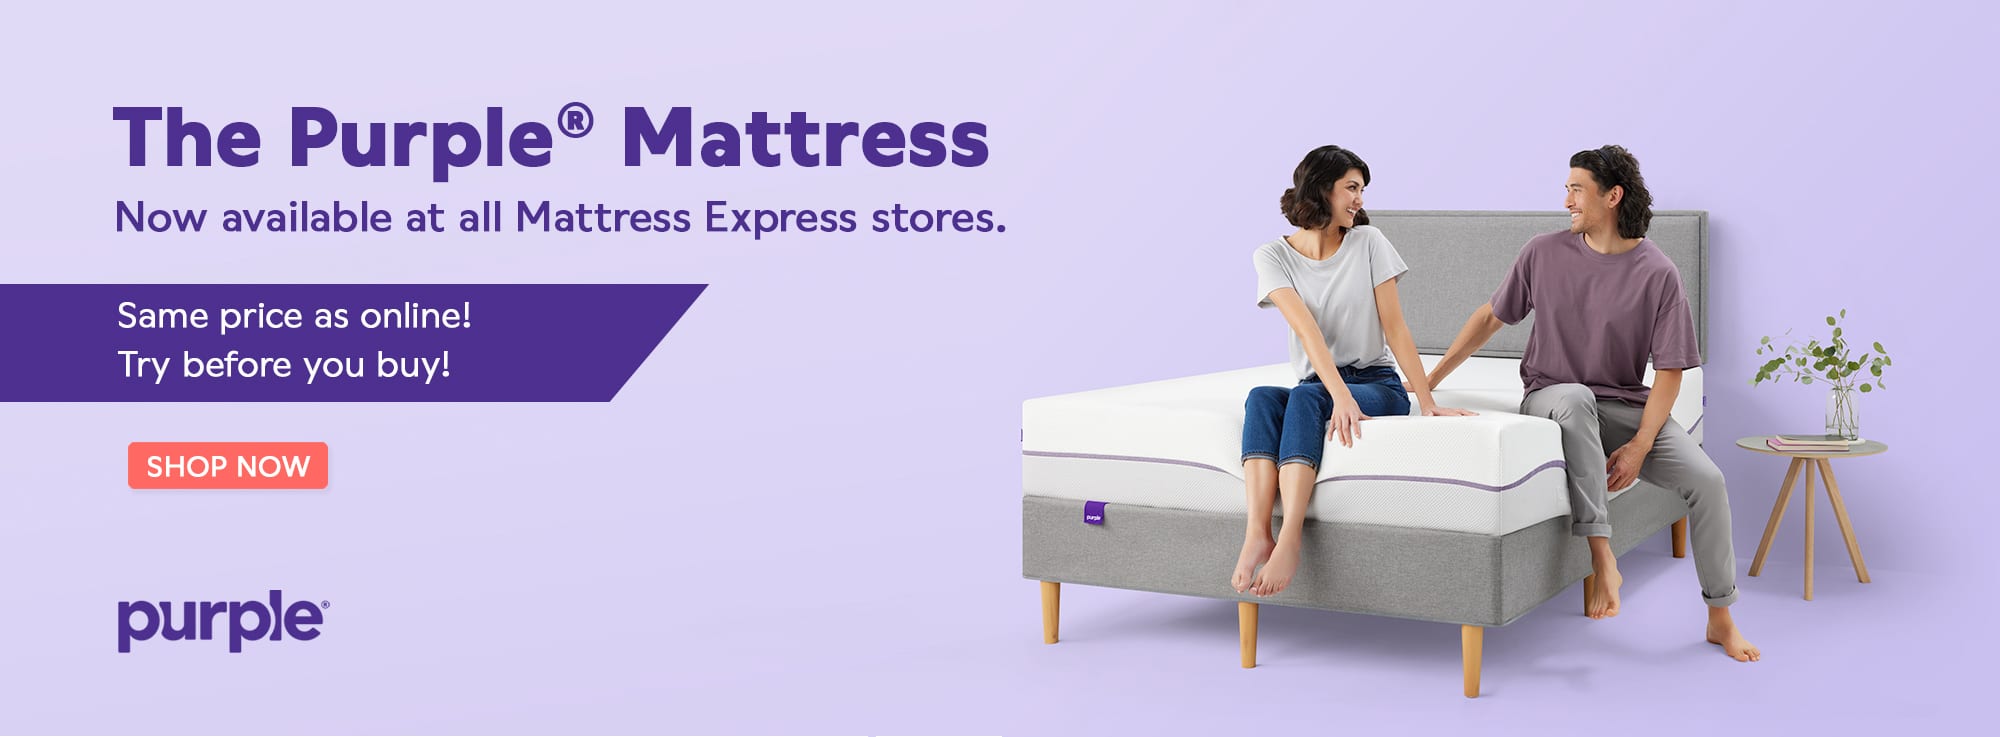 Purple Mattress Now at Mattress Express